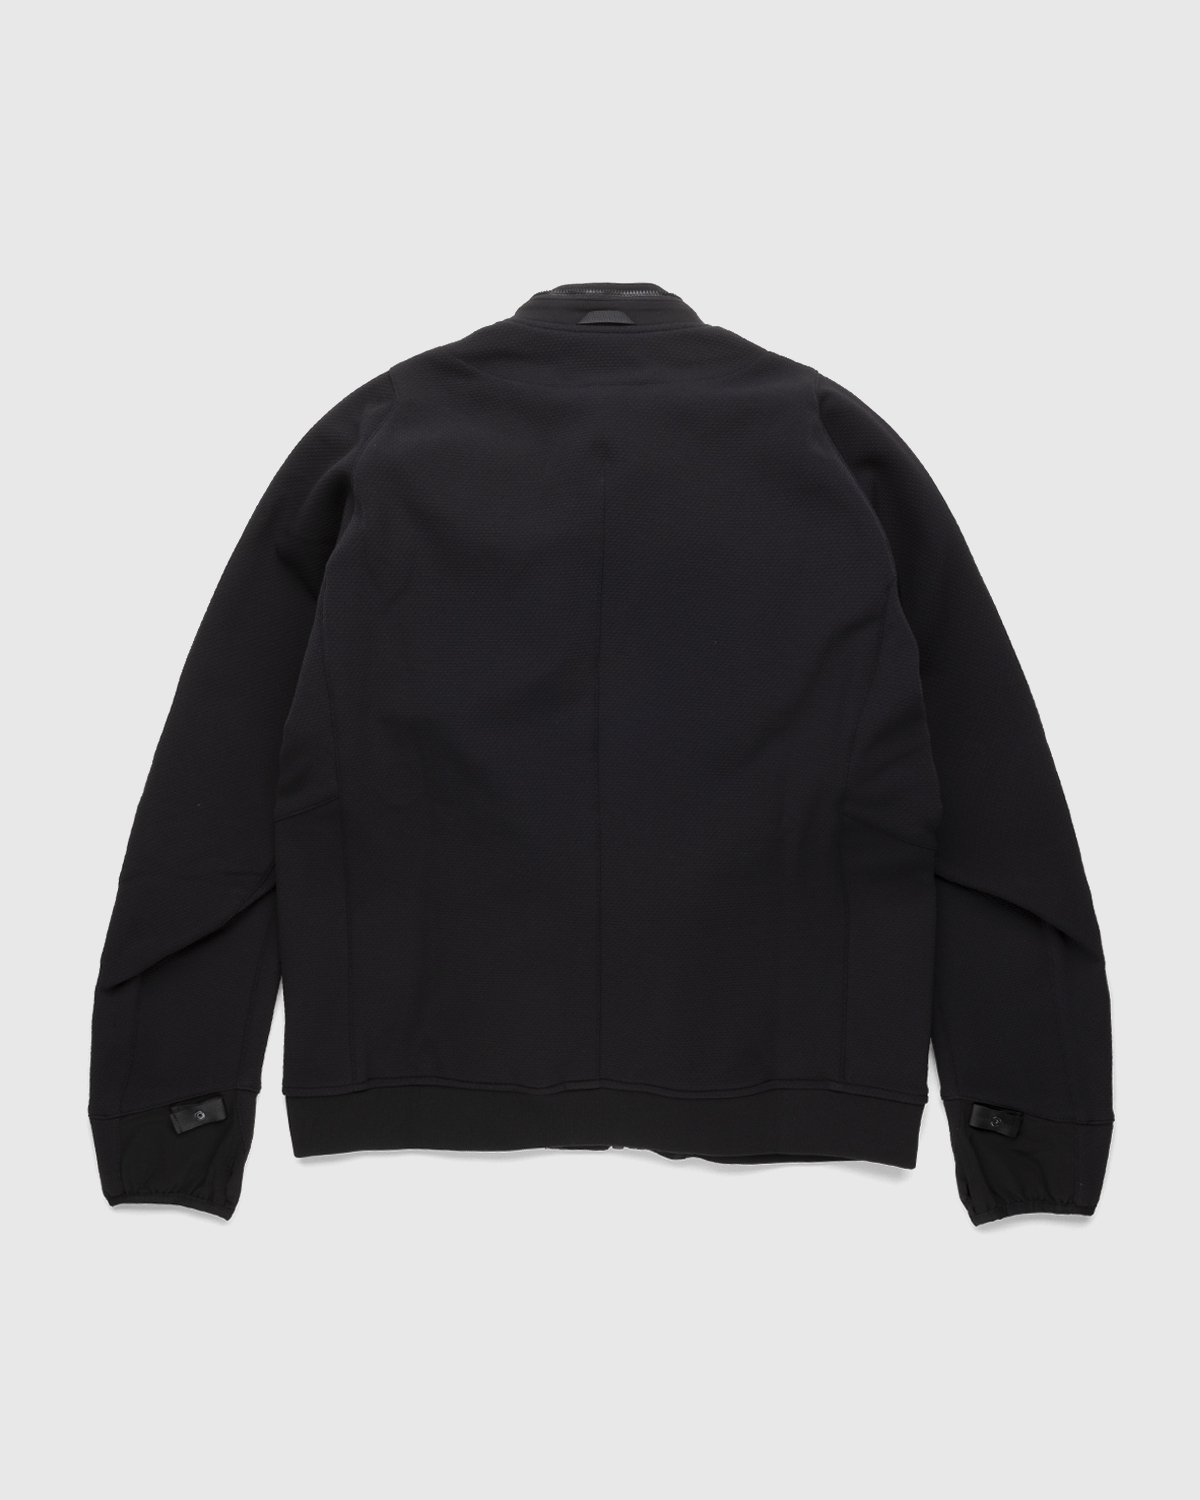 ACRONYM - J90-SS Jacket Black - Clothing - Black - Image 2